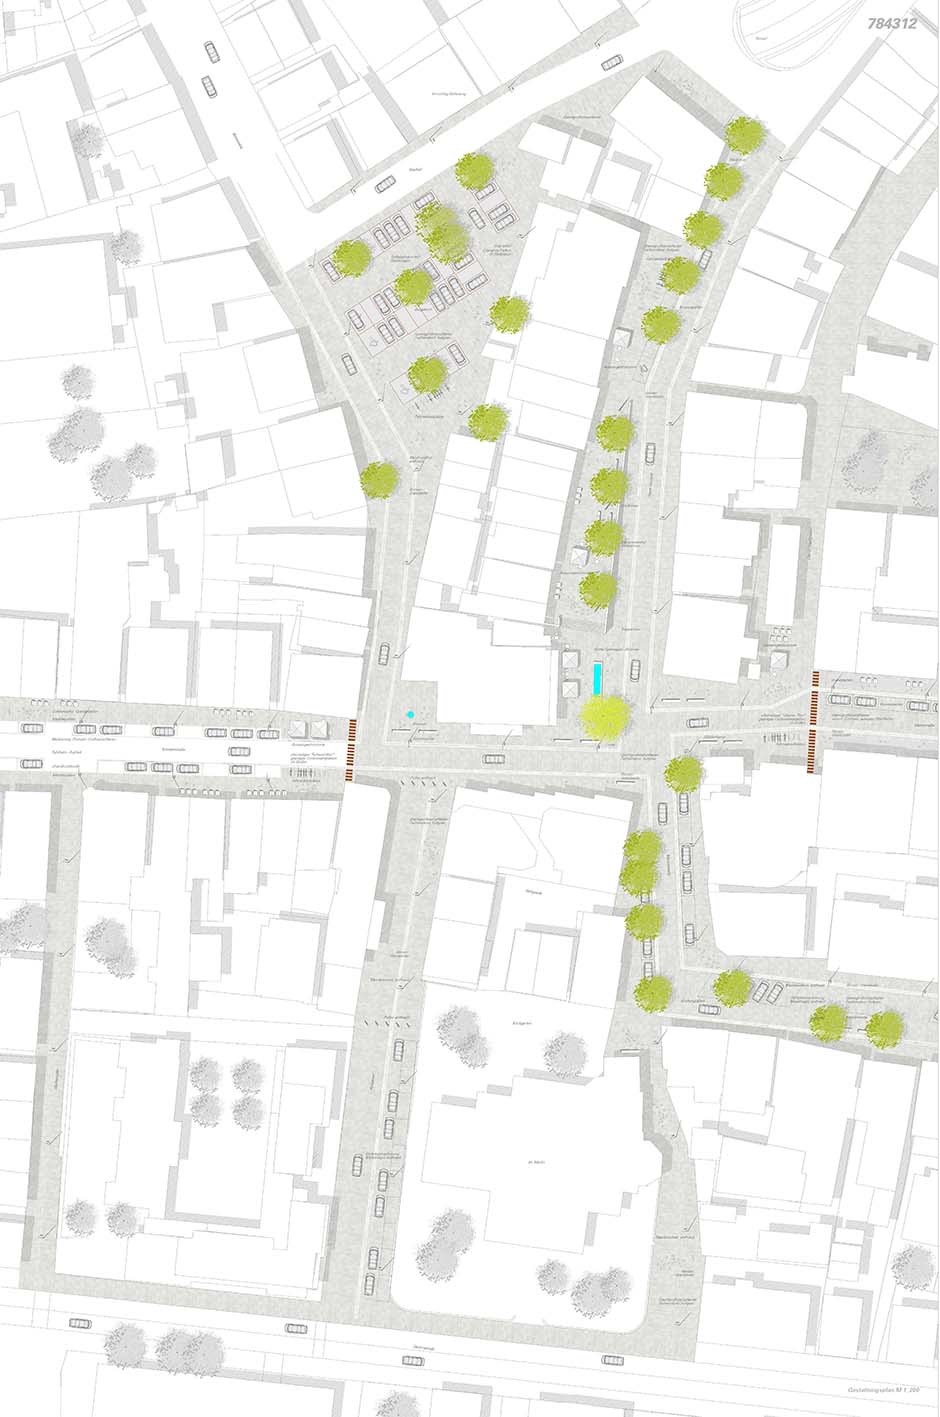 Bild zum Projekt Wettbewerb Straßen und Plätze in Albstadt